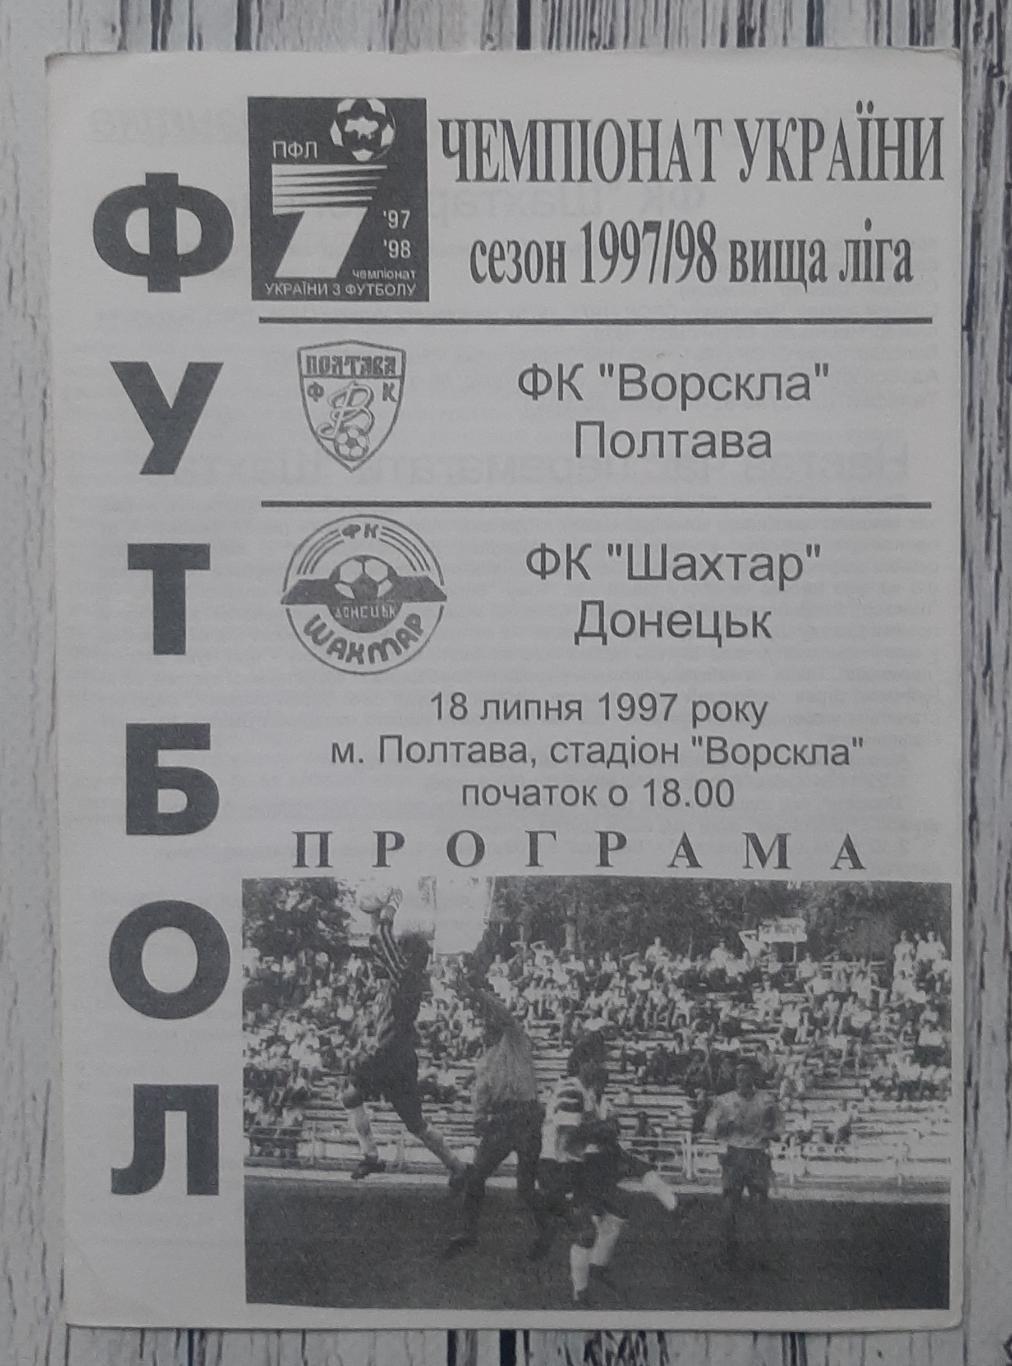 Ворскла Полтава - Шахтар Донецьк 18.07.1997